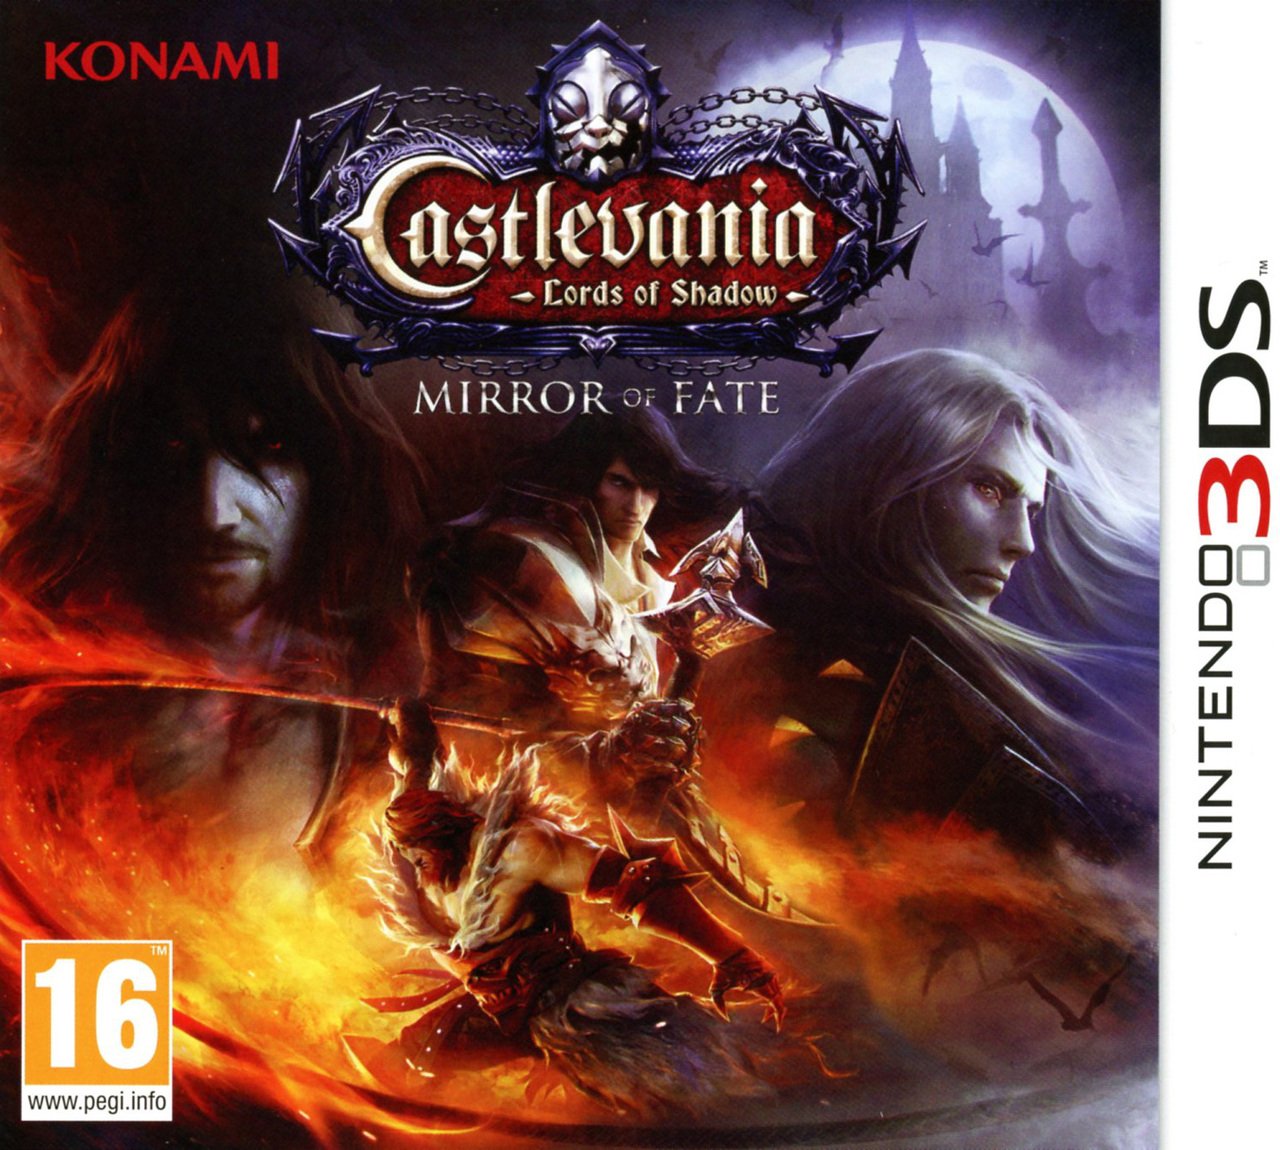 Caratula de Castlevania: Lords of Shadow - Mirror of Fate para Nintendo 3DS